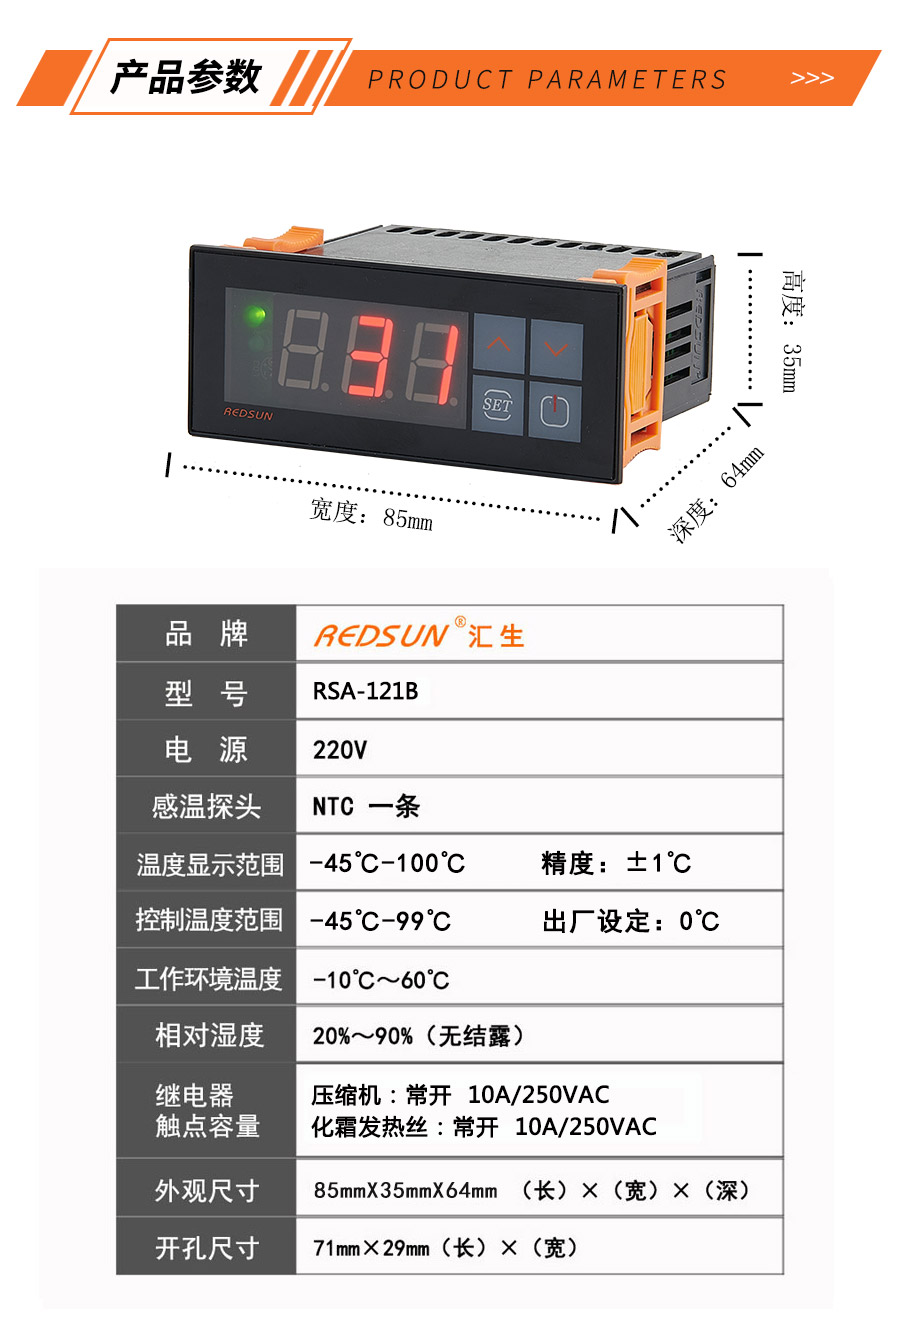 温度控制器-温控器-制冷制热恒温控制器-电子温控器 温控仪表-汇生